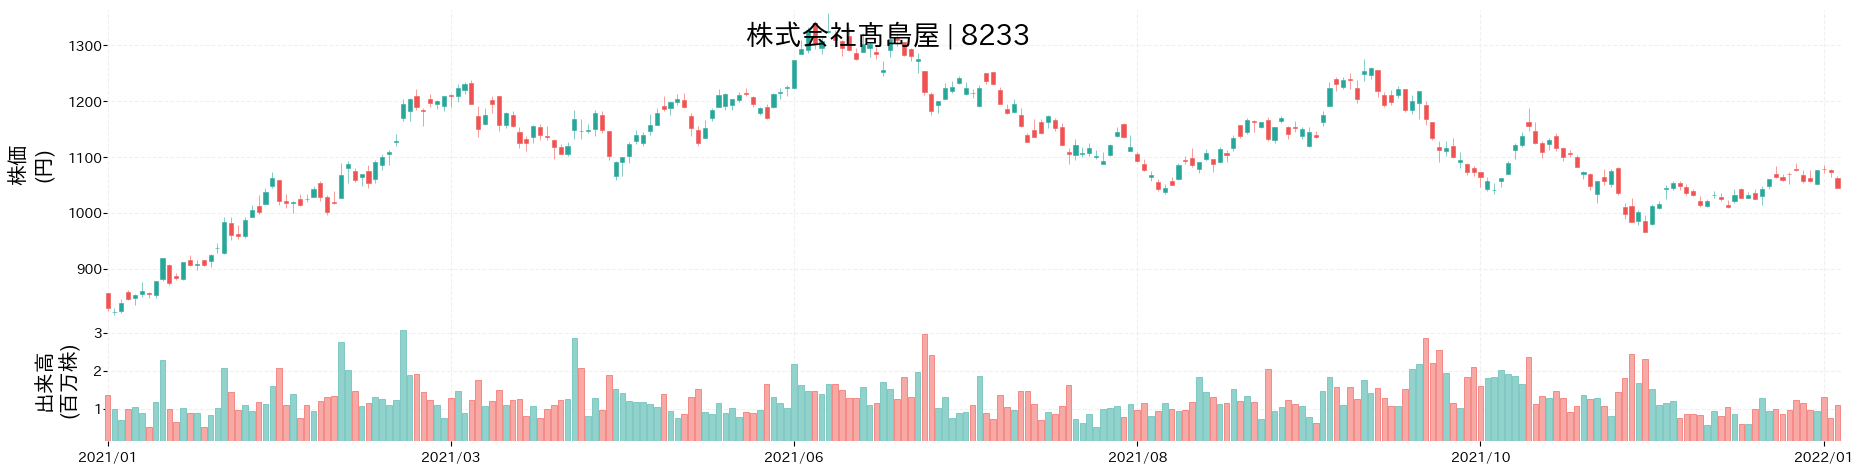 髙島屋の株価推移(2021)